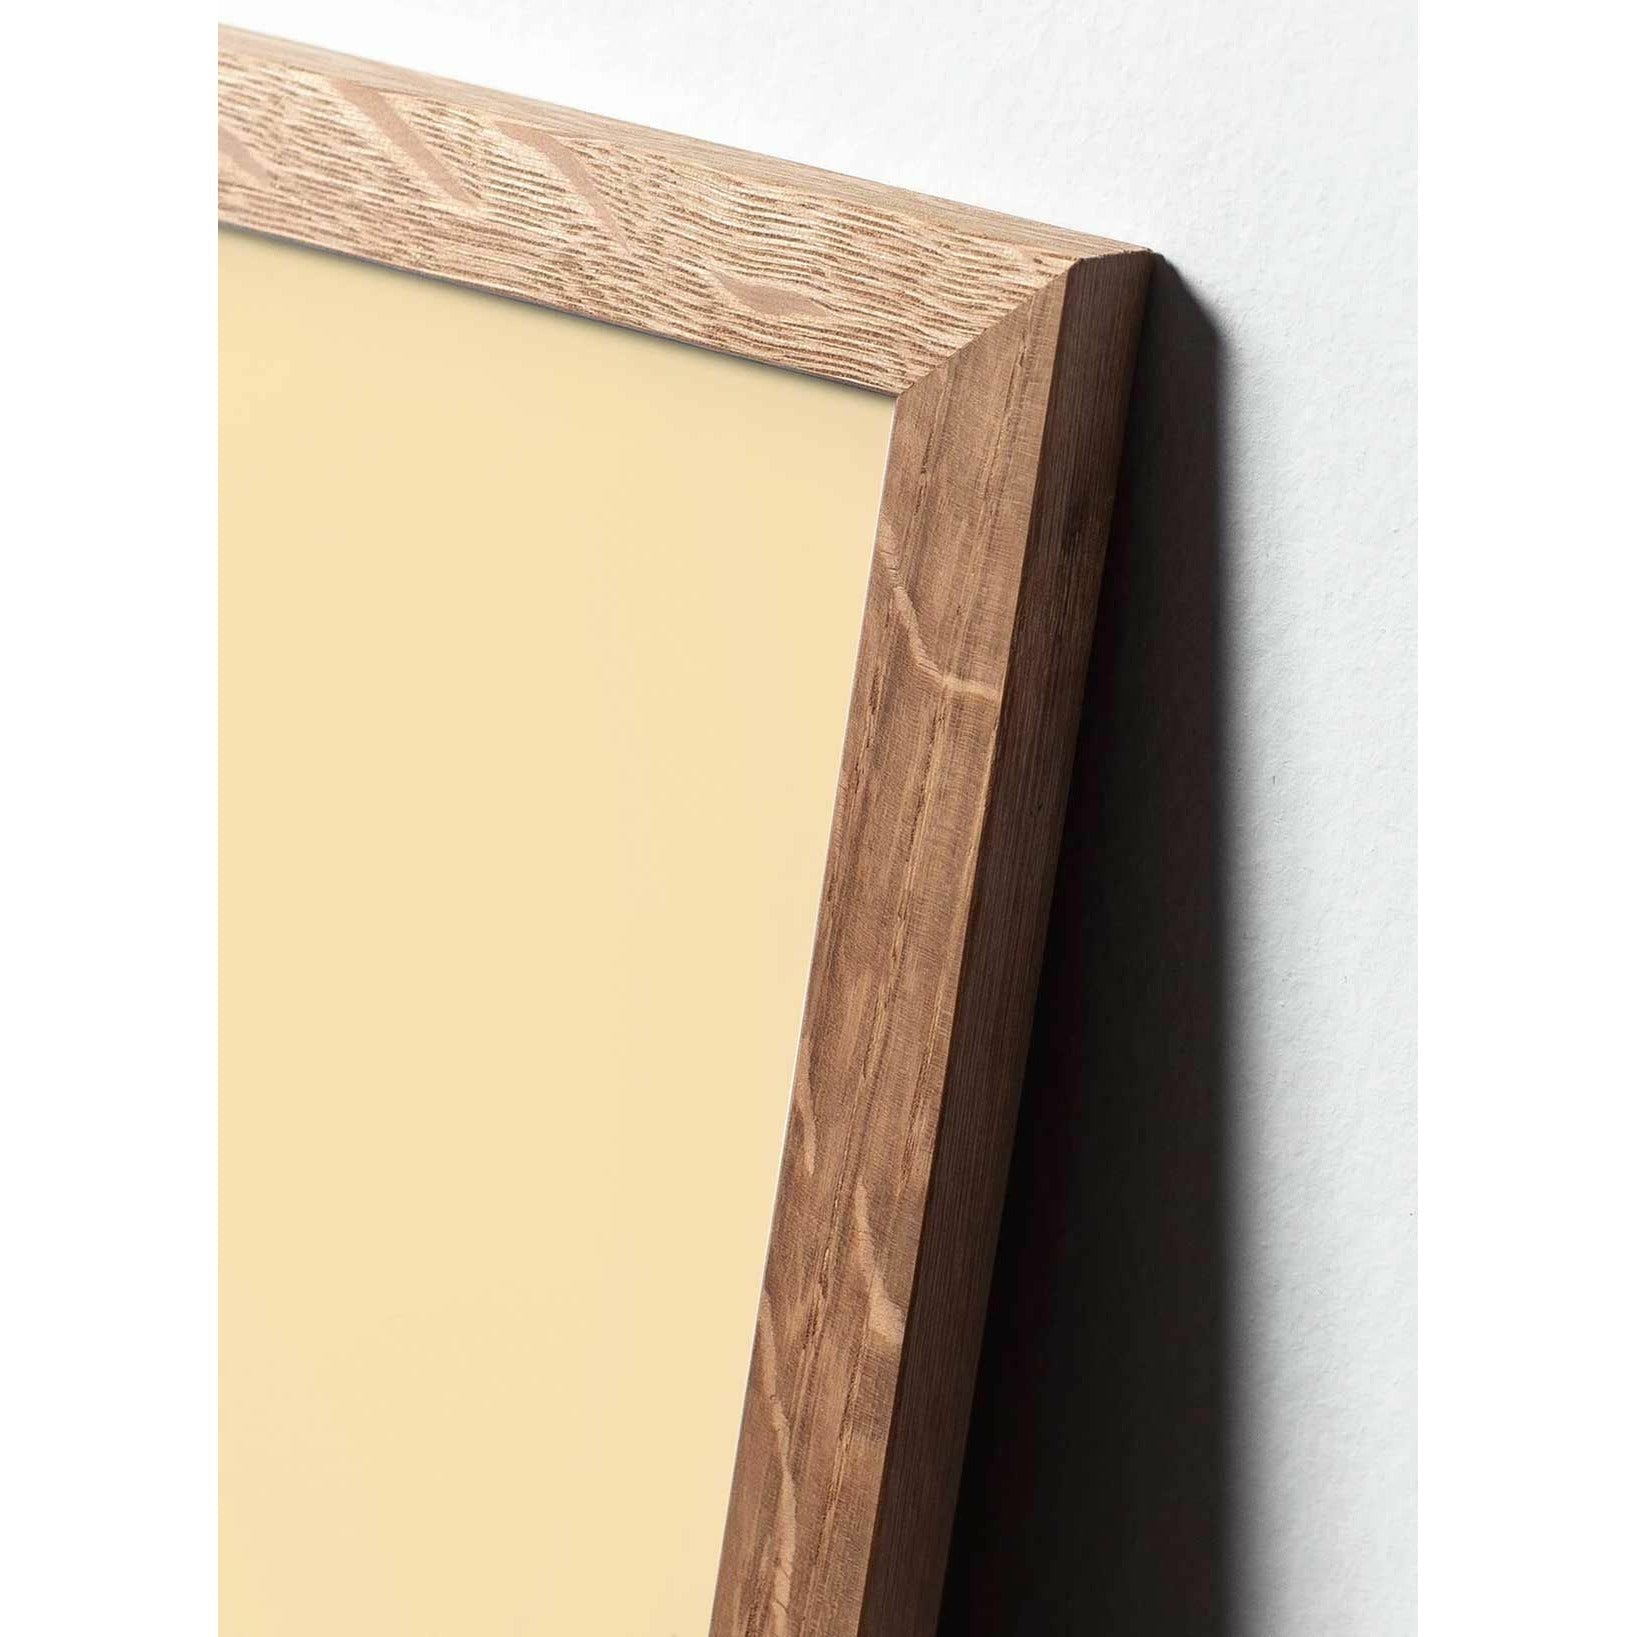 Póster clásico de hormigas de creación, marco hecho de madera clara de 70x100 cm, fondo blanco